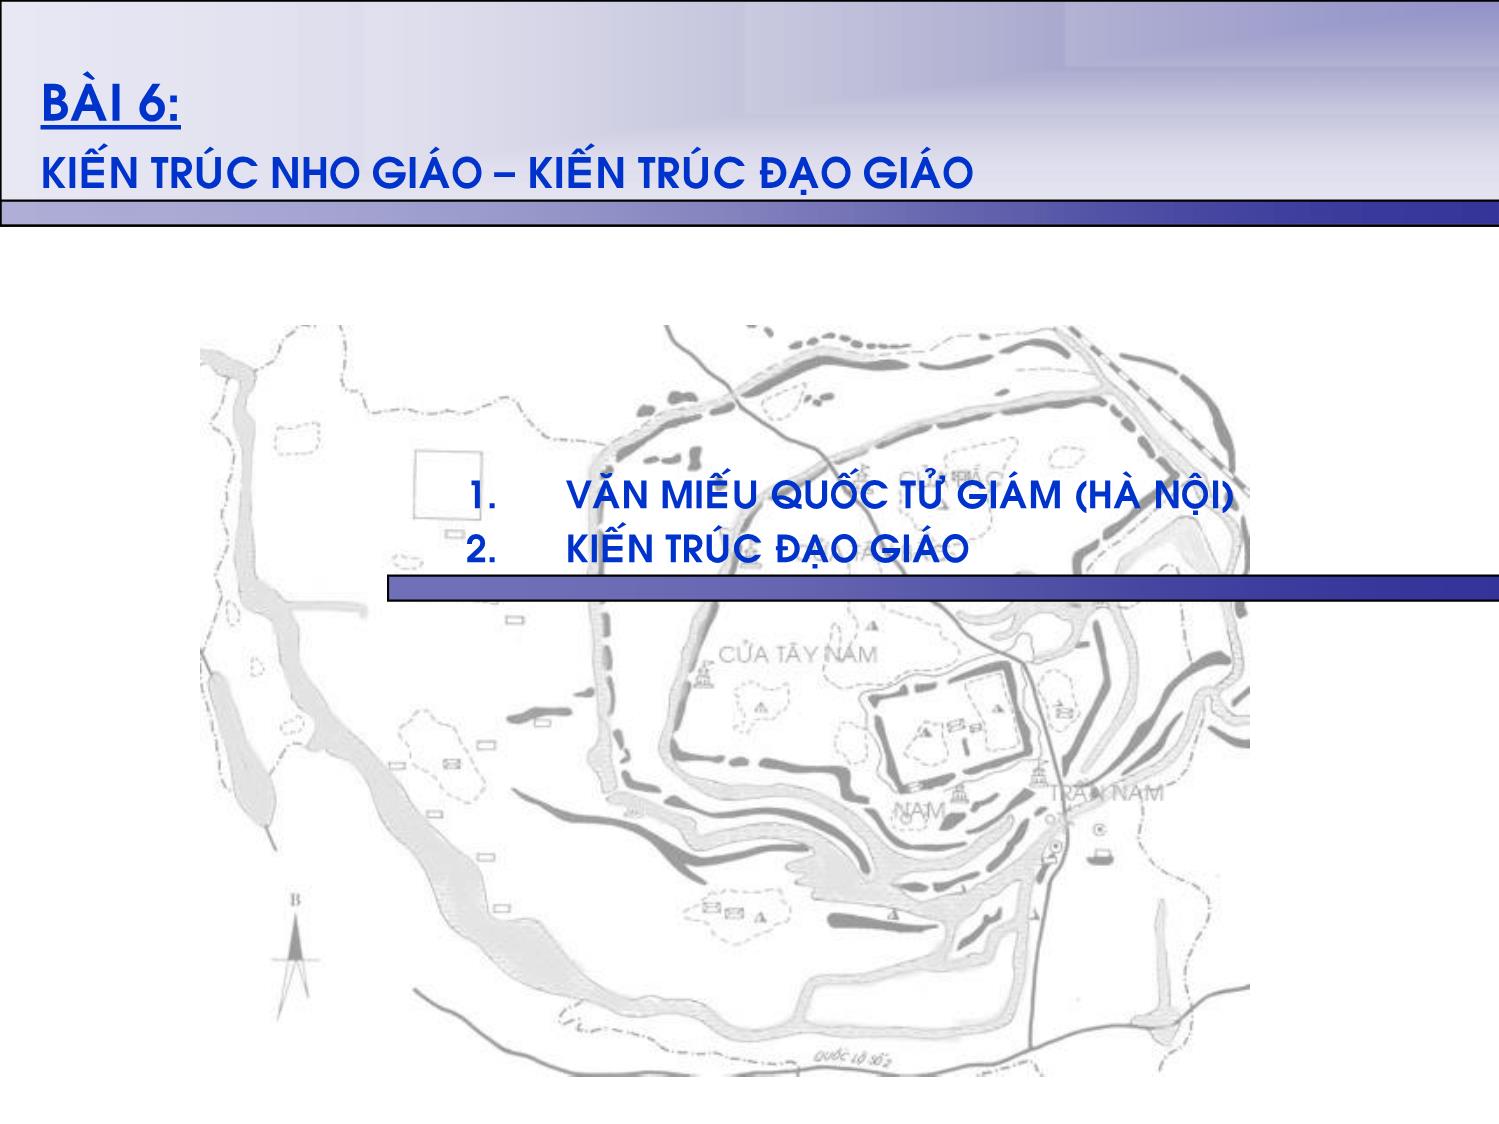 Bài giảng Lịch sủ kiến trúc Việt Nam - Bài 7: Kiến trúc Nho giáo. Kiến trúc Đạo giáo trang 2